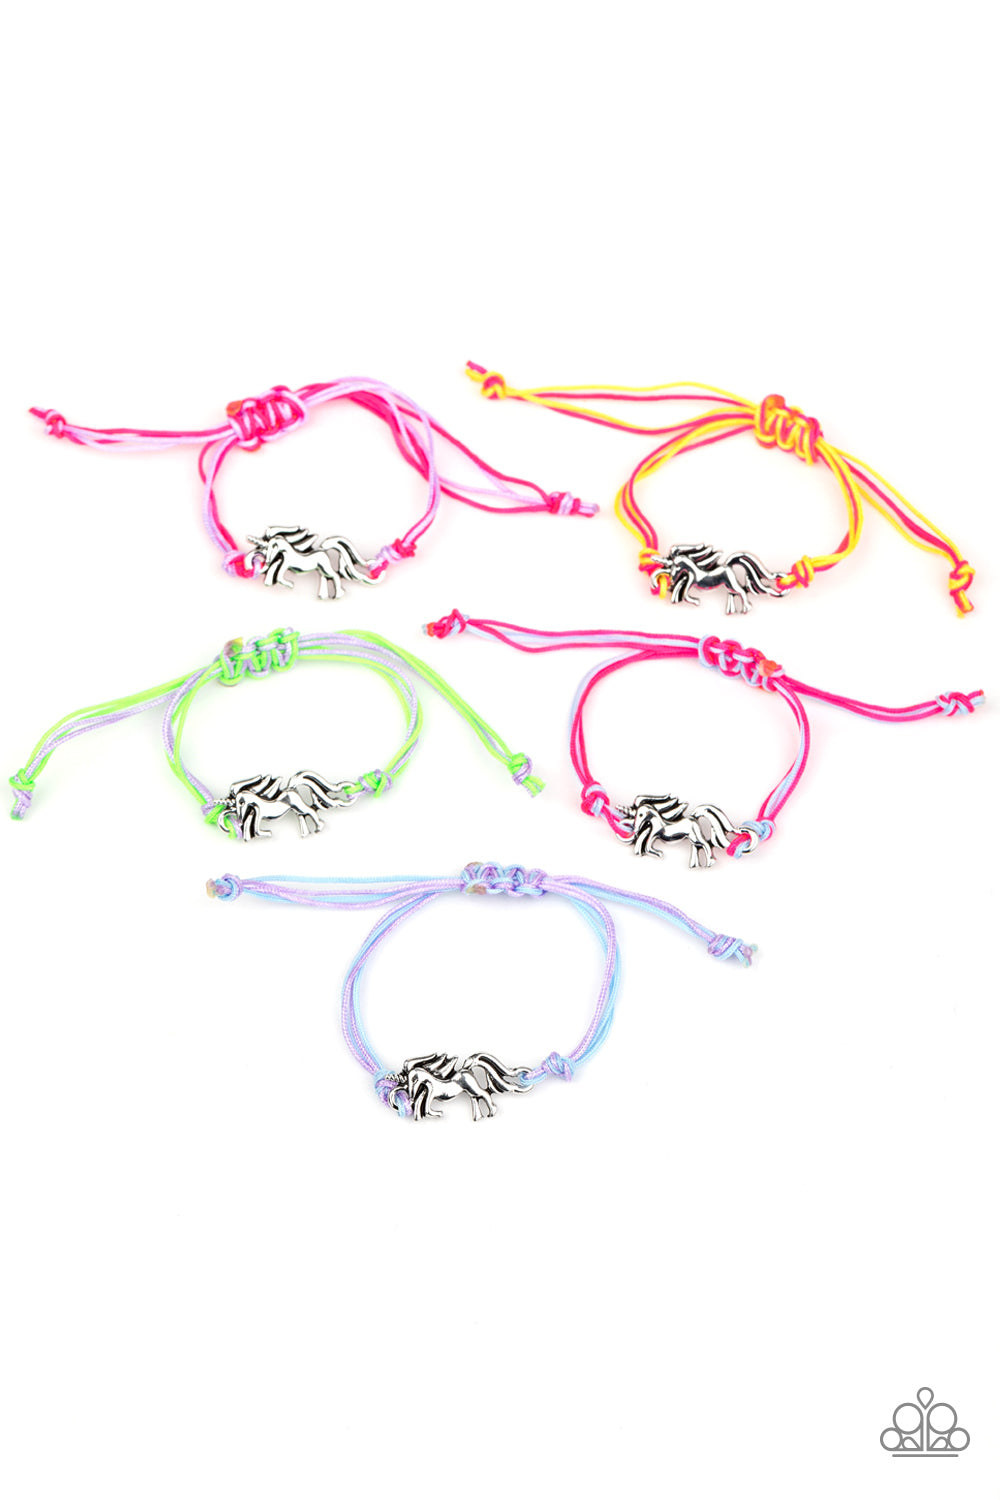 starlet-shimmer-bracelet-kit-8296-p9ss-mtxx-244xx